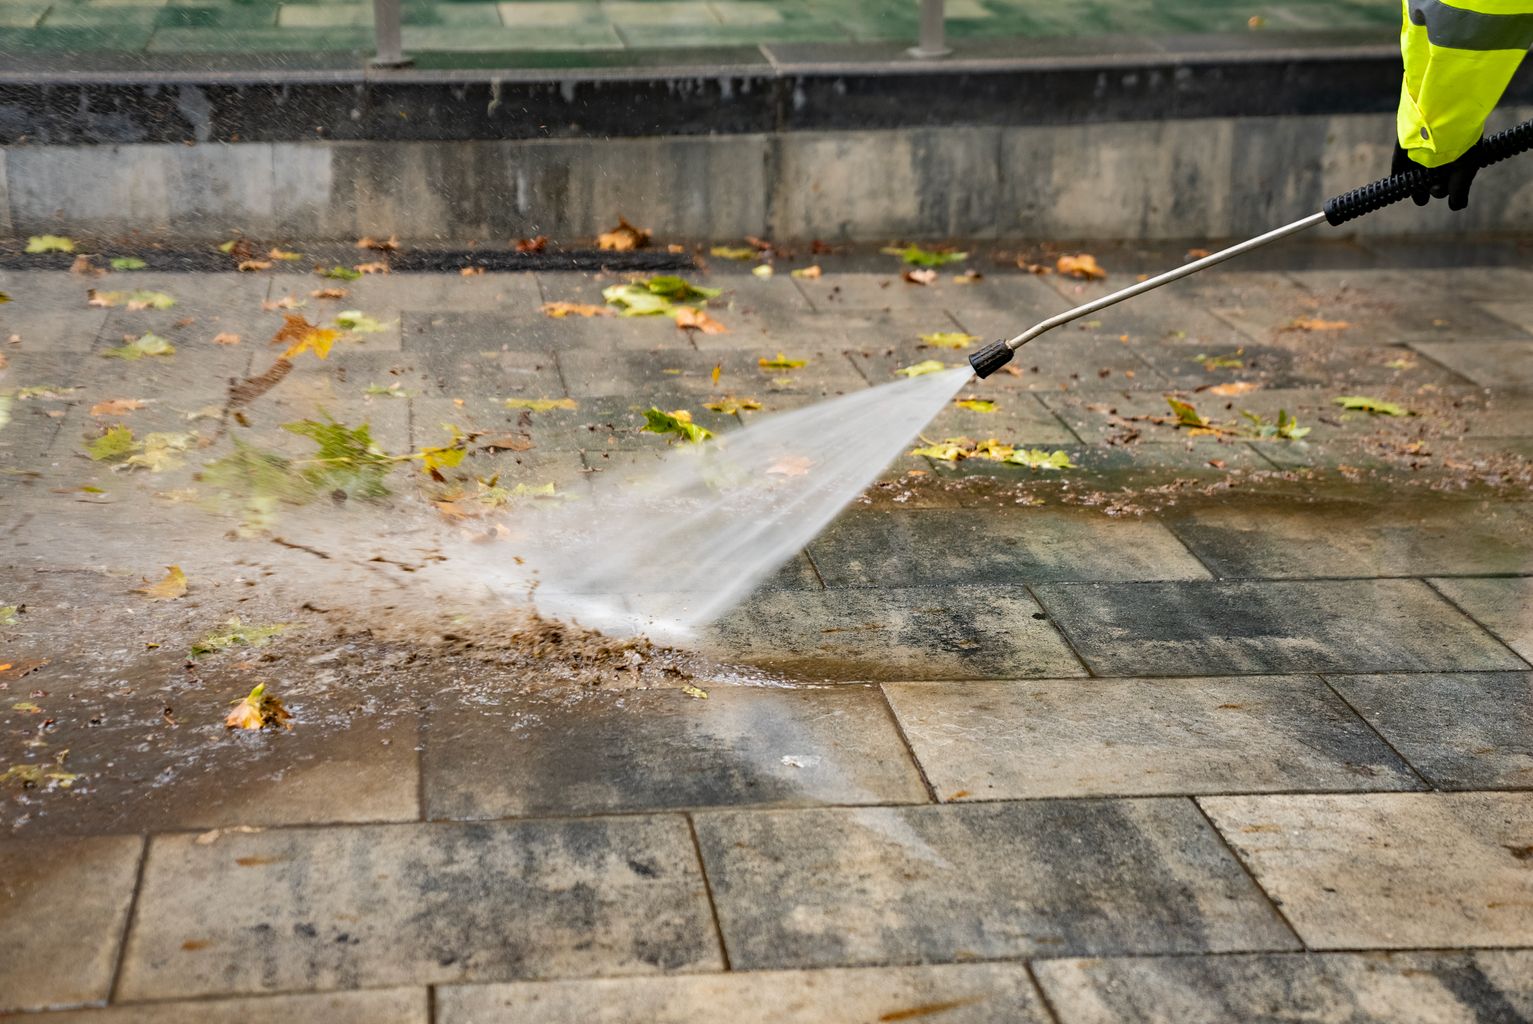 Un trabajador del Servicio de Limpieza lava con agua a presión el pavimento de la plaza de la Trinitat y retira hojas, tierra y suciedad